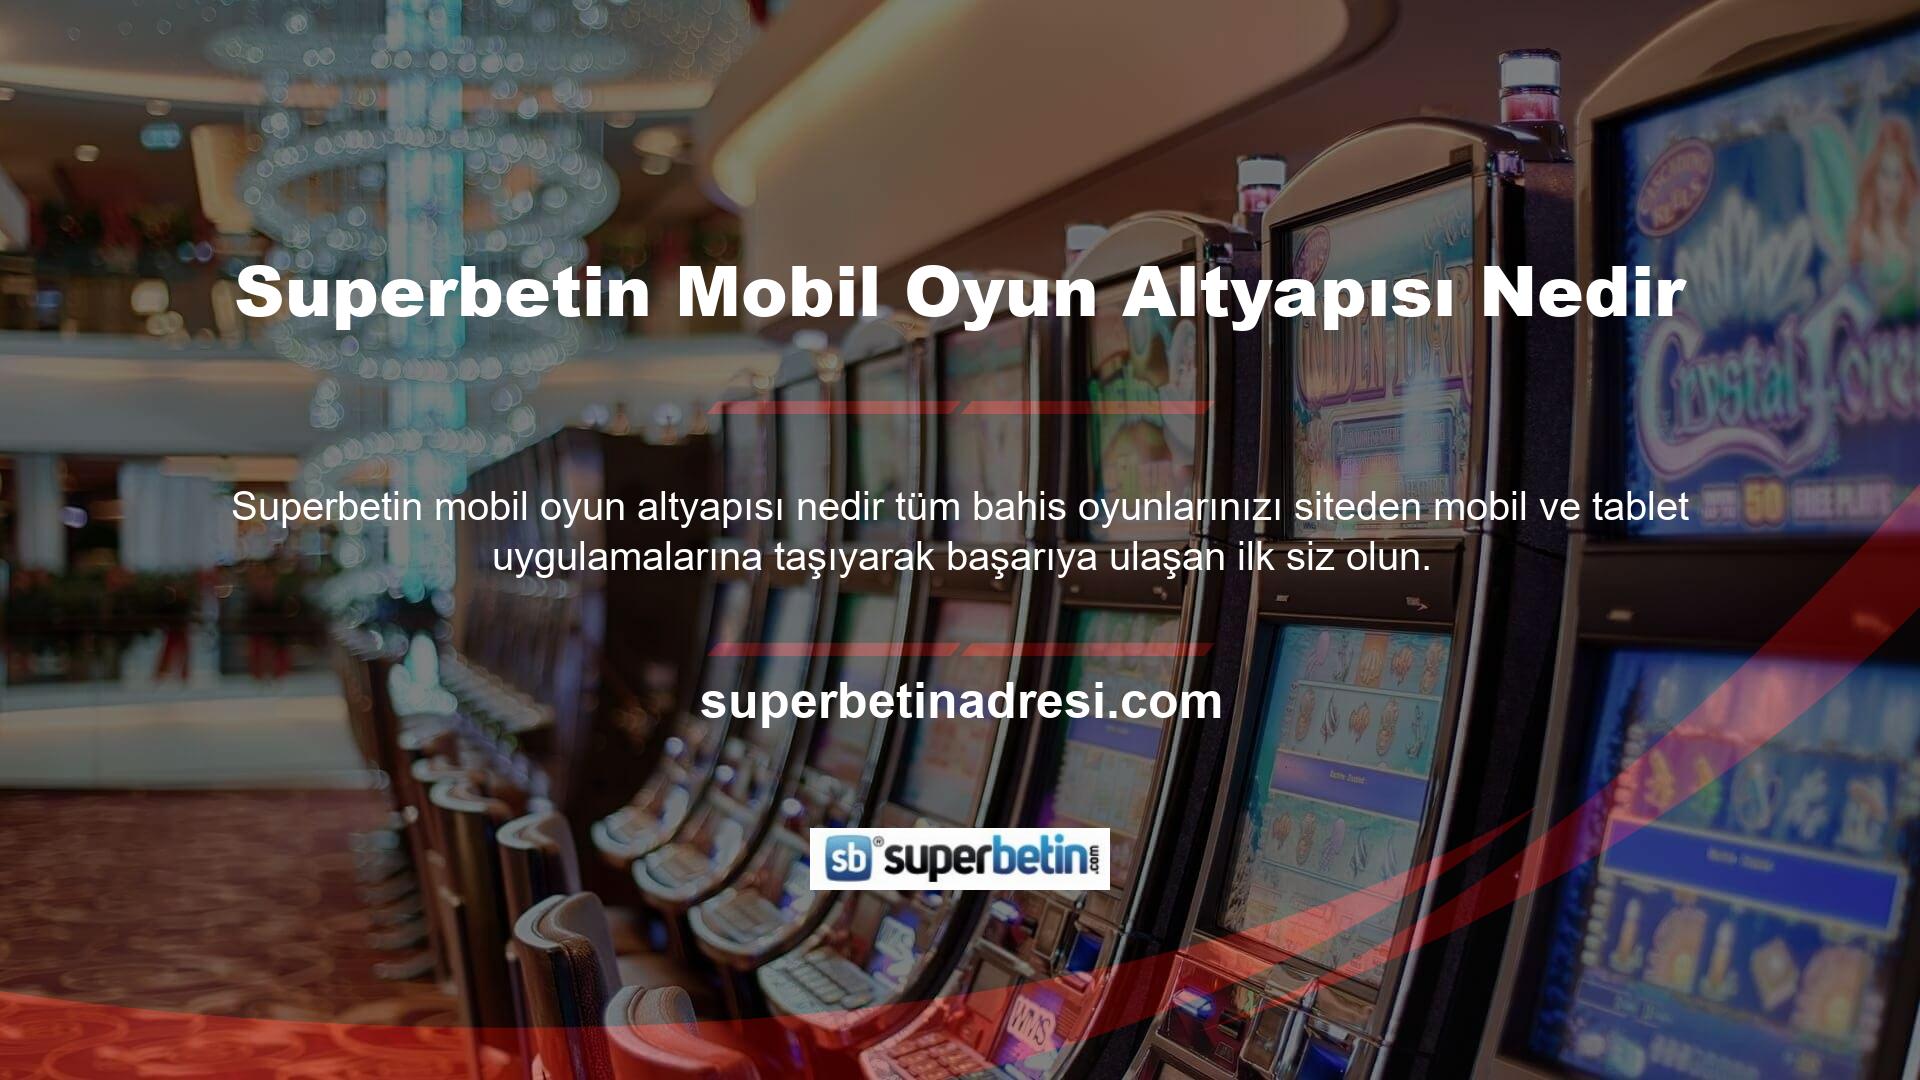 Superbetin mobil oyun altyapısı nedir, bu teknolojiyi kullanan ve tüm platformlarda güvenilir bir bahis ortamını çok hızlı bir şekilde sağlayan sayılı bahis sitelerinden biridir